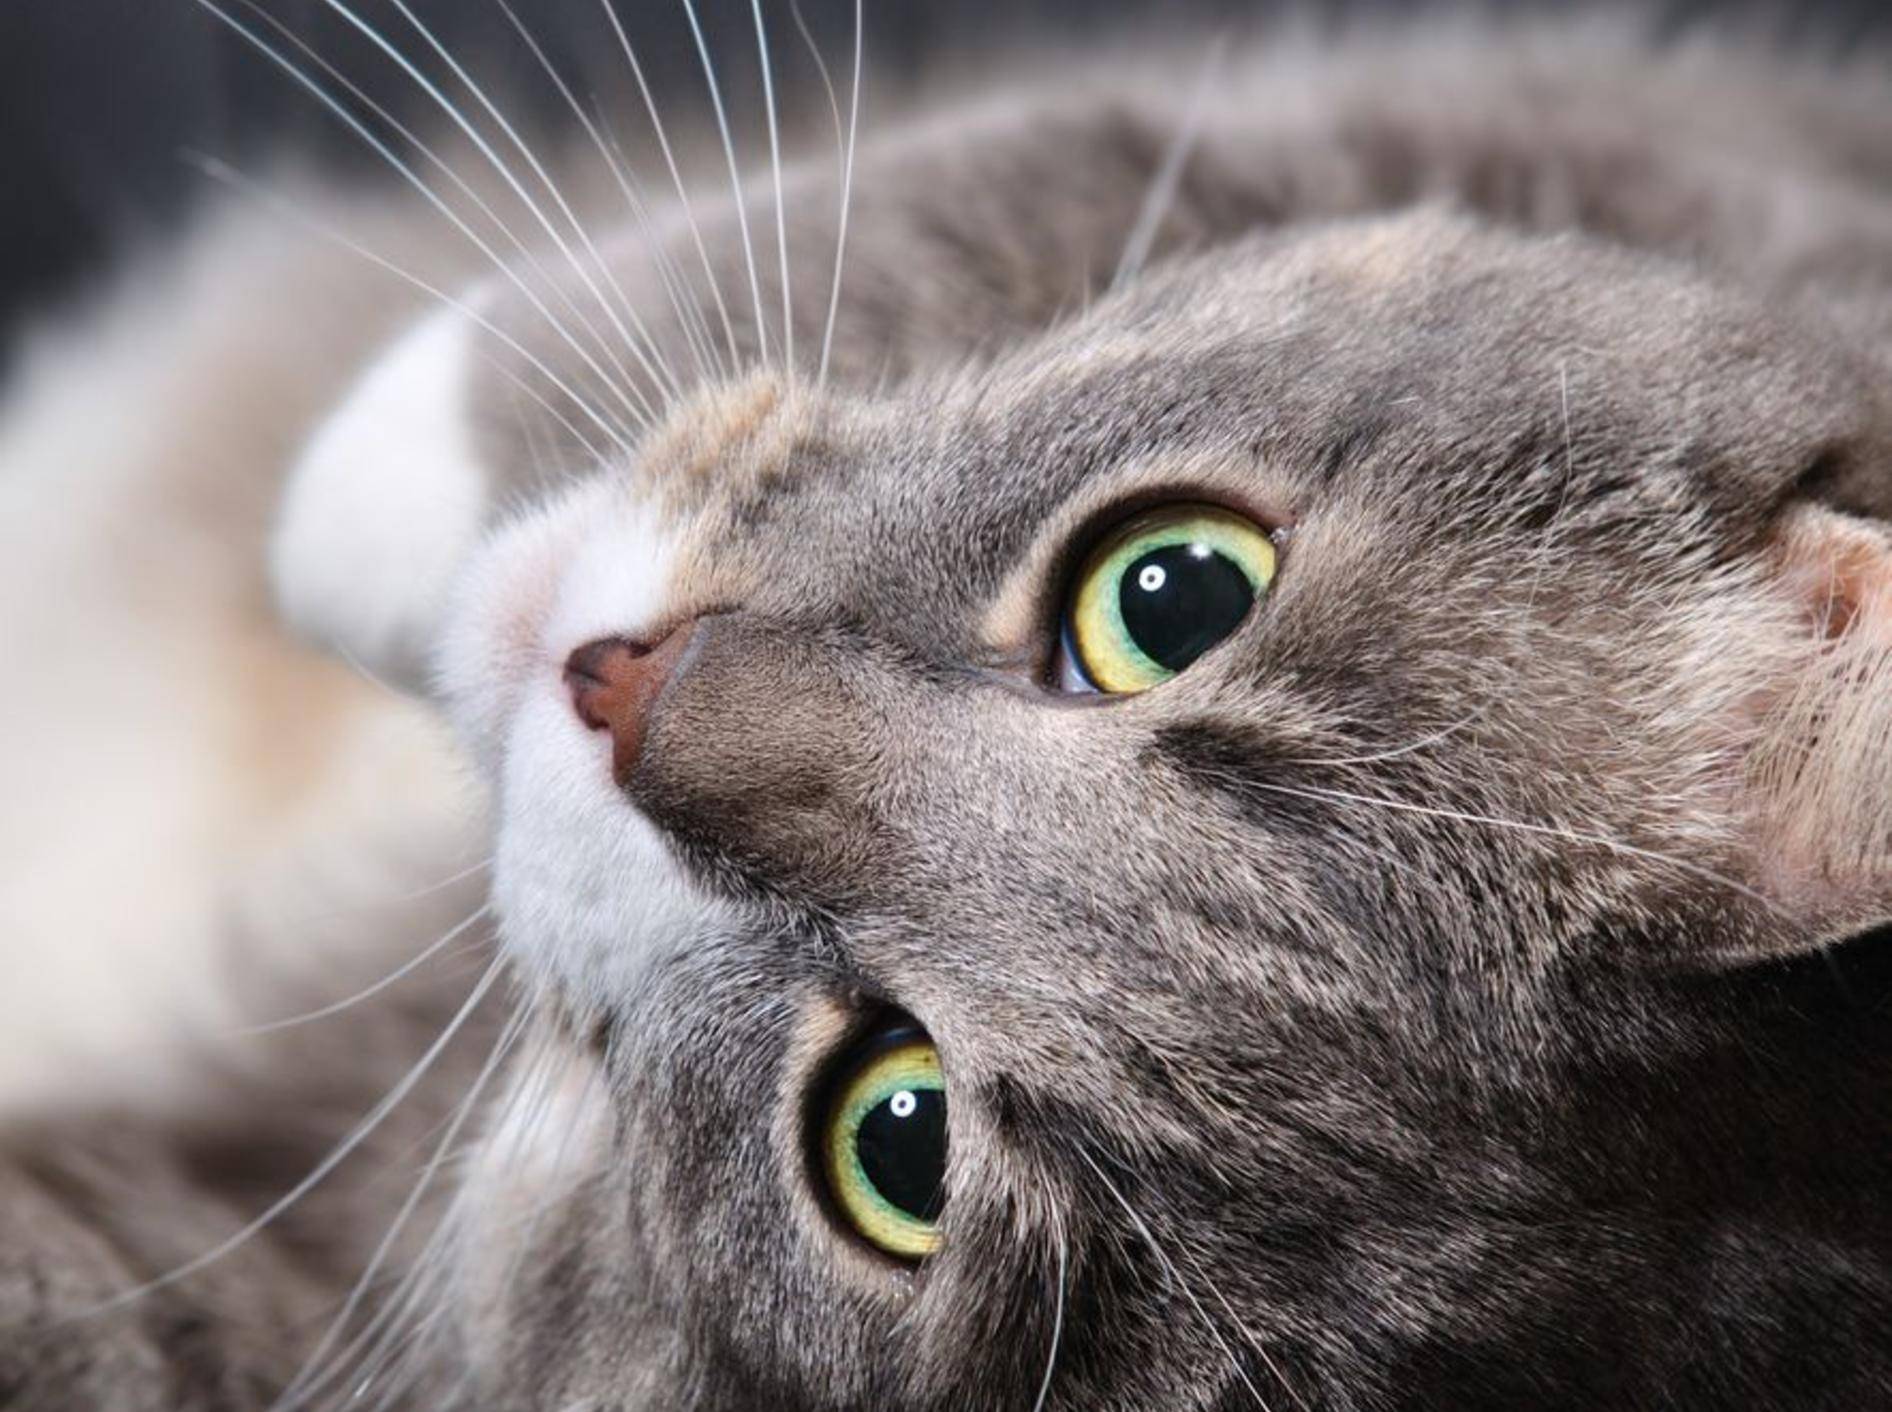 Trauer um die geliebte Katze: Kommt Tierpräparation infrage? – Bild: Shutterstock